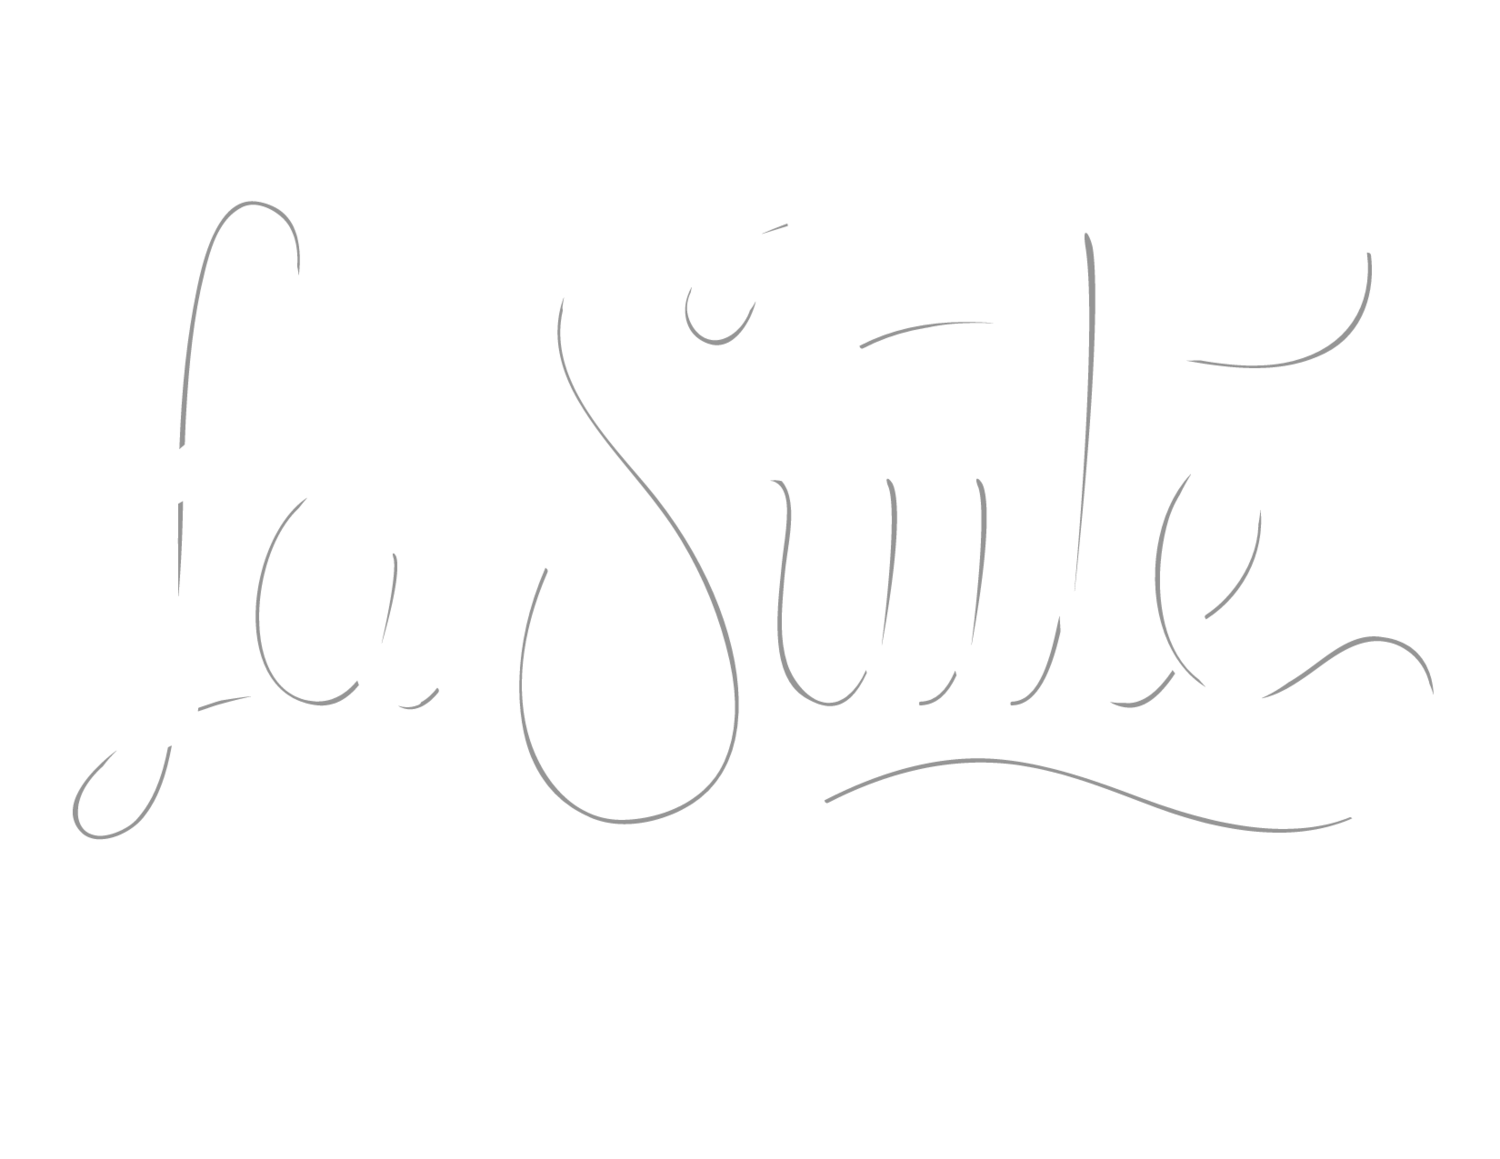 La Suite Motel Boutique